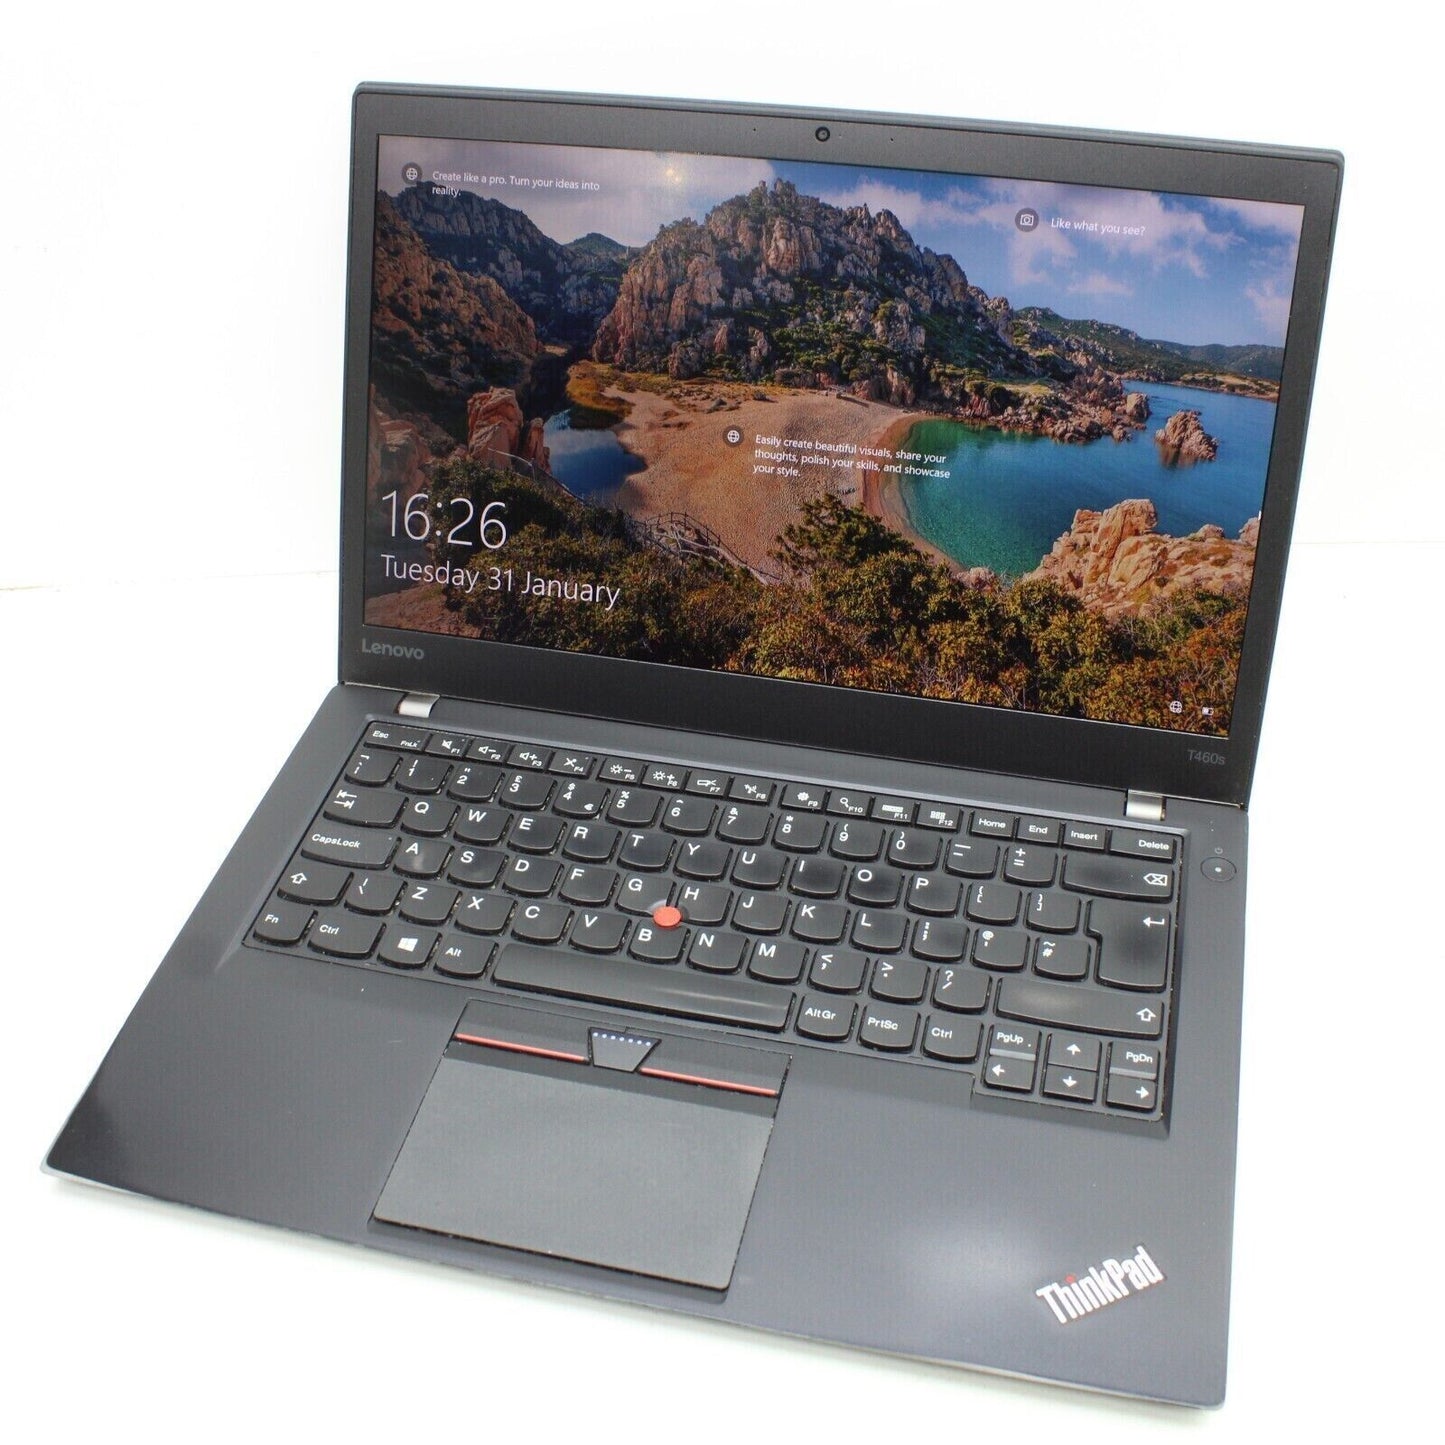 Lenovo T460s Core i7-6600U 16GB Ram 512GB NVME SSD Laptop #940SE